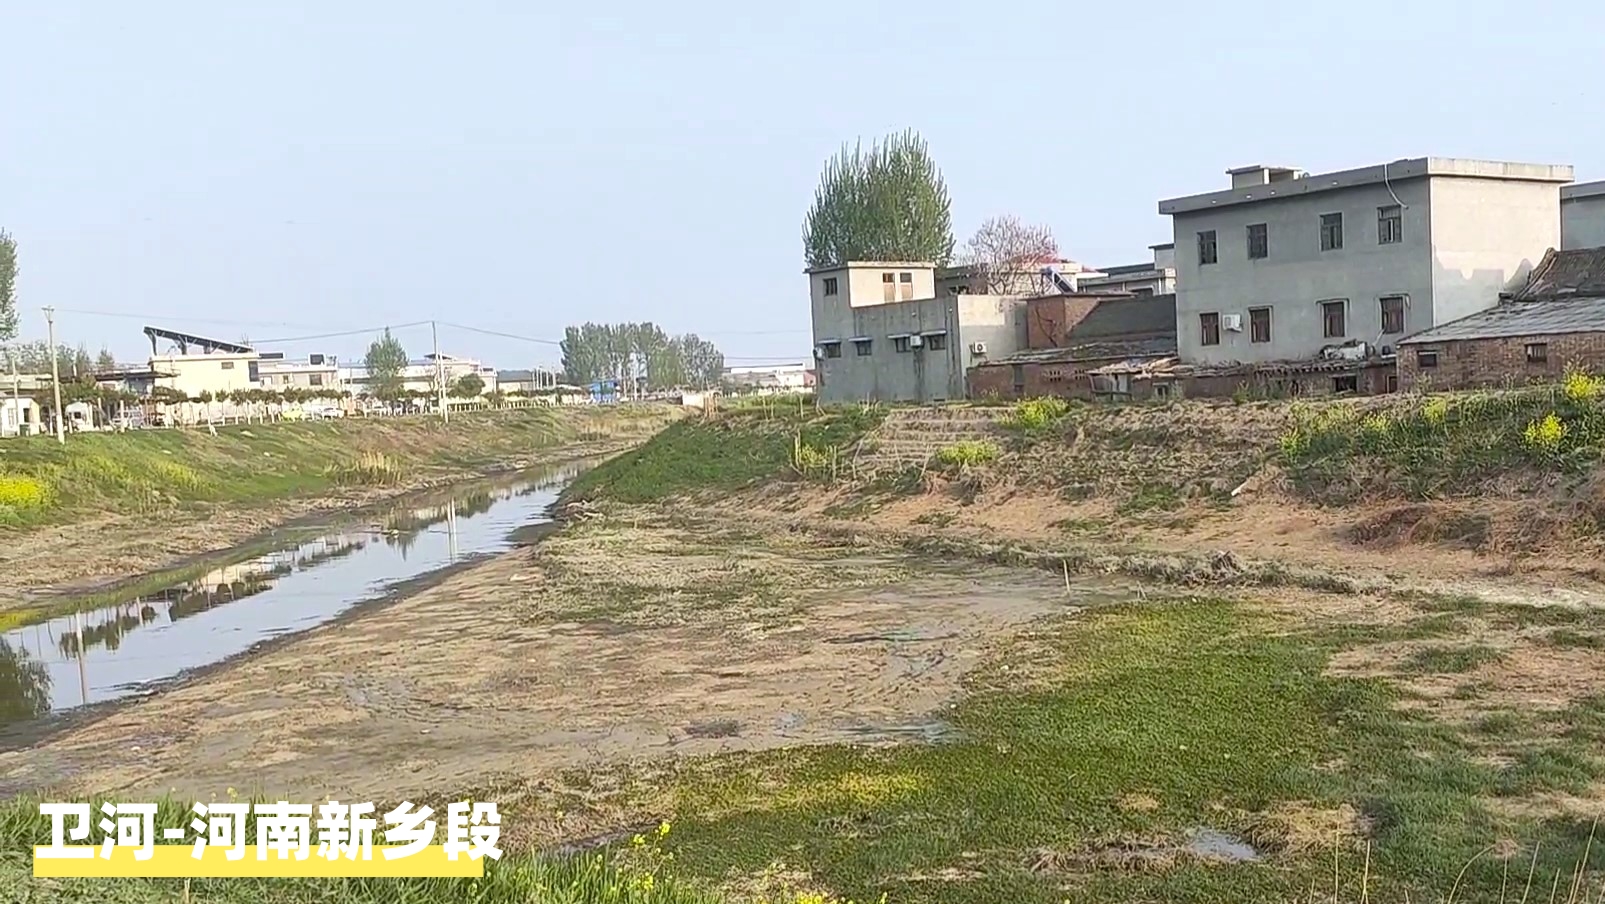 中国大运河现在全线通水复航了吗?